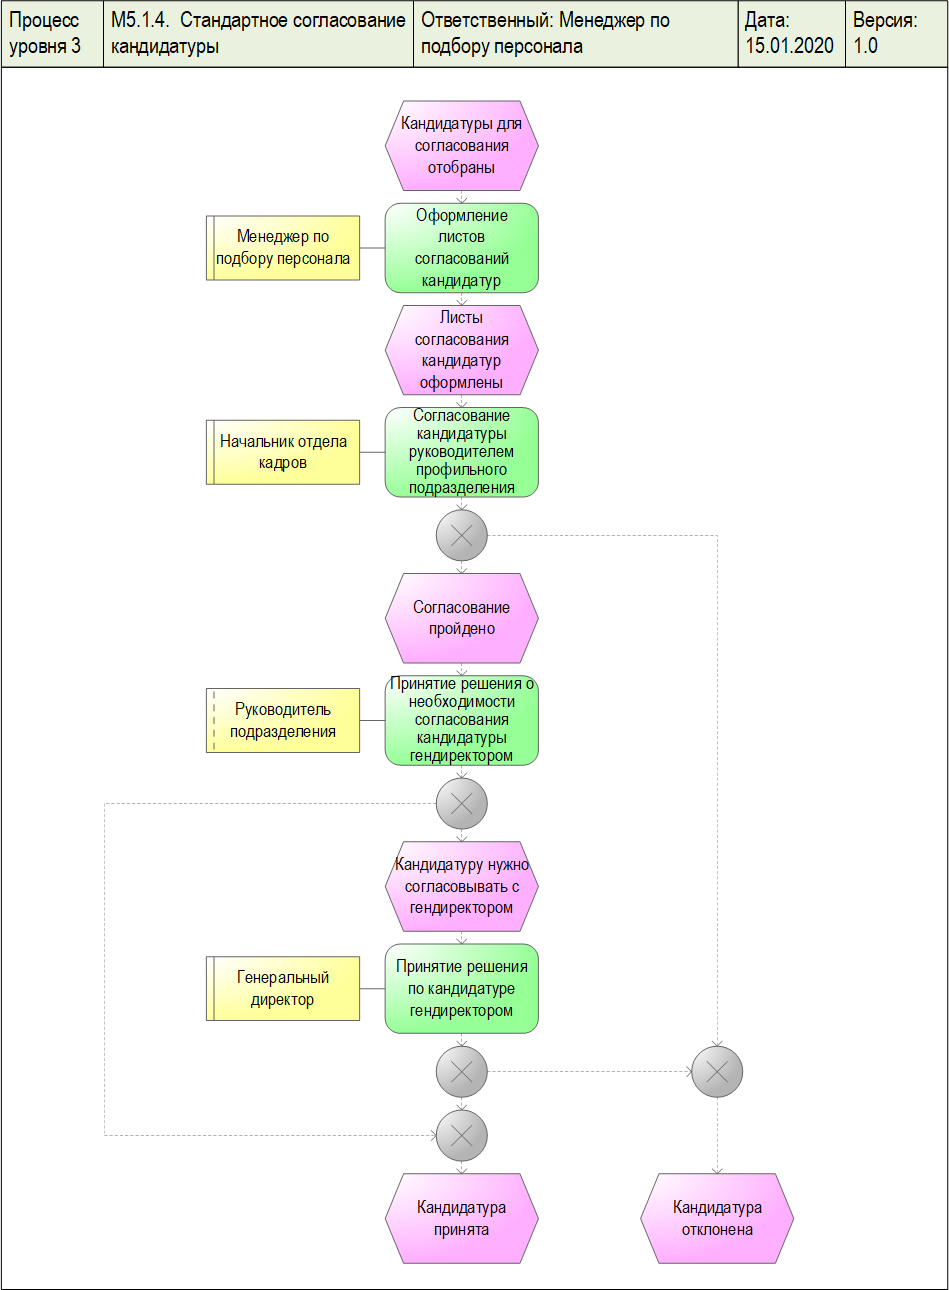 Методология ARIS. EPC-модель бизнес-процесса нижнего уровня. Диаграмма разработана в системе Бизнес-инженер.